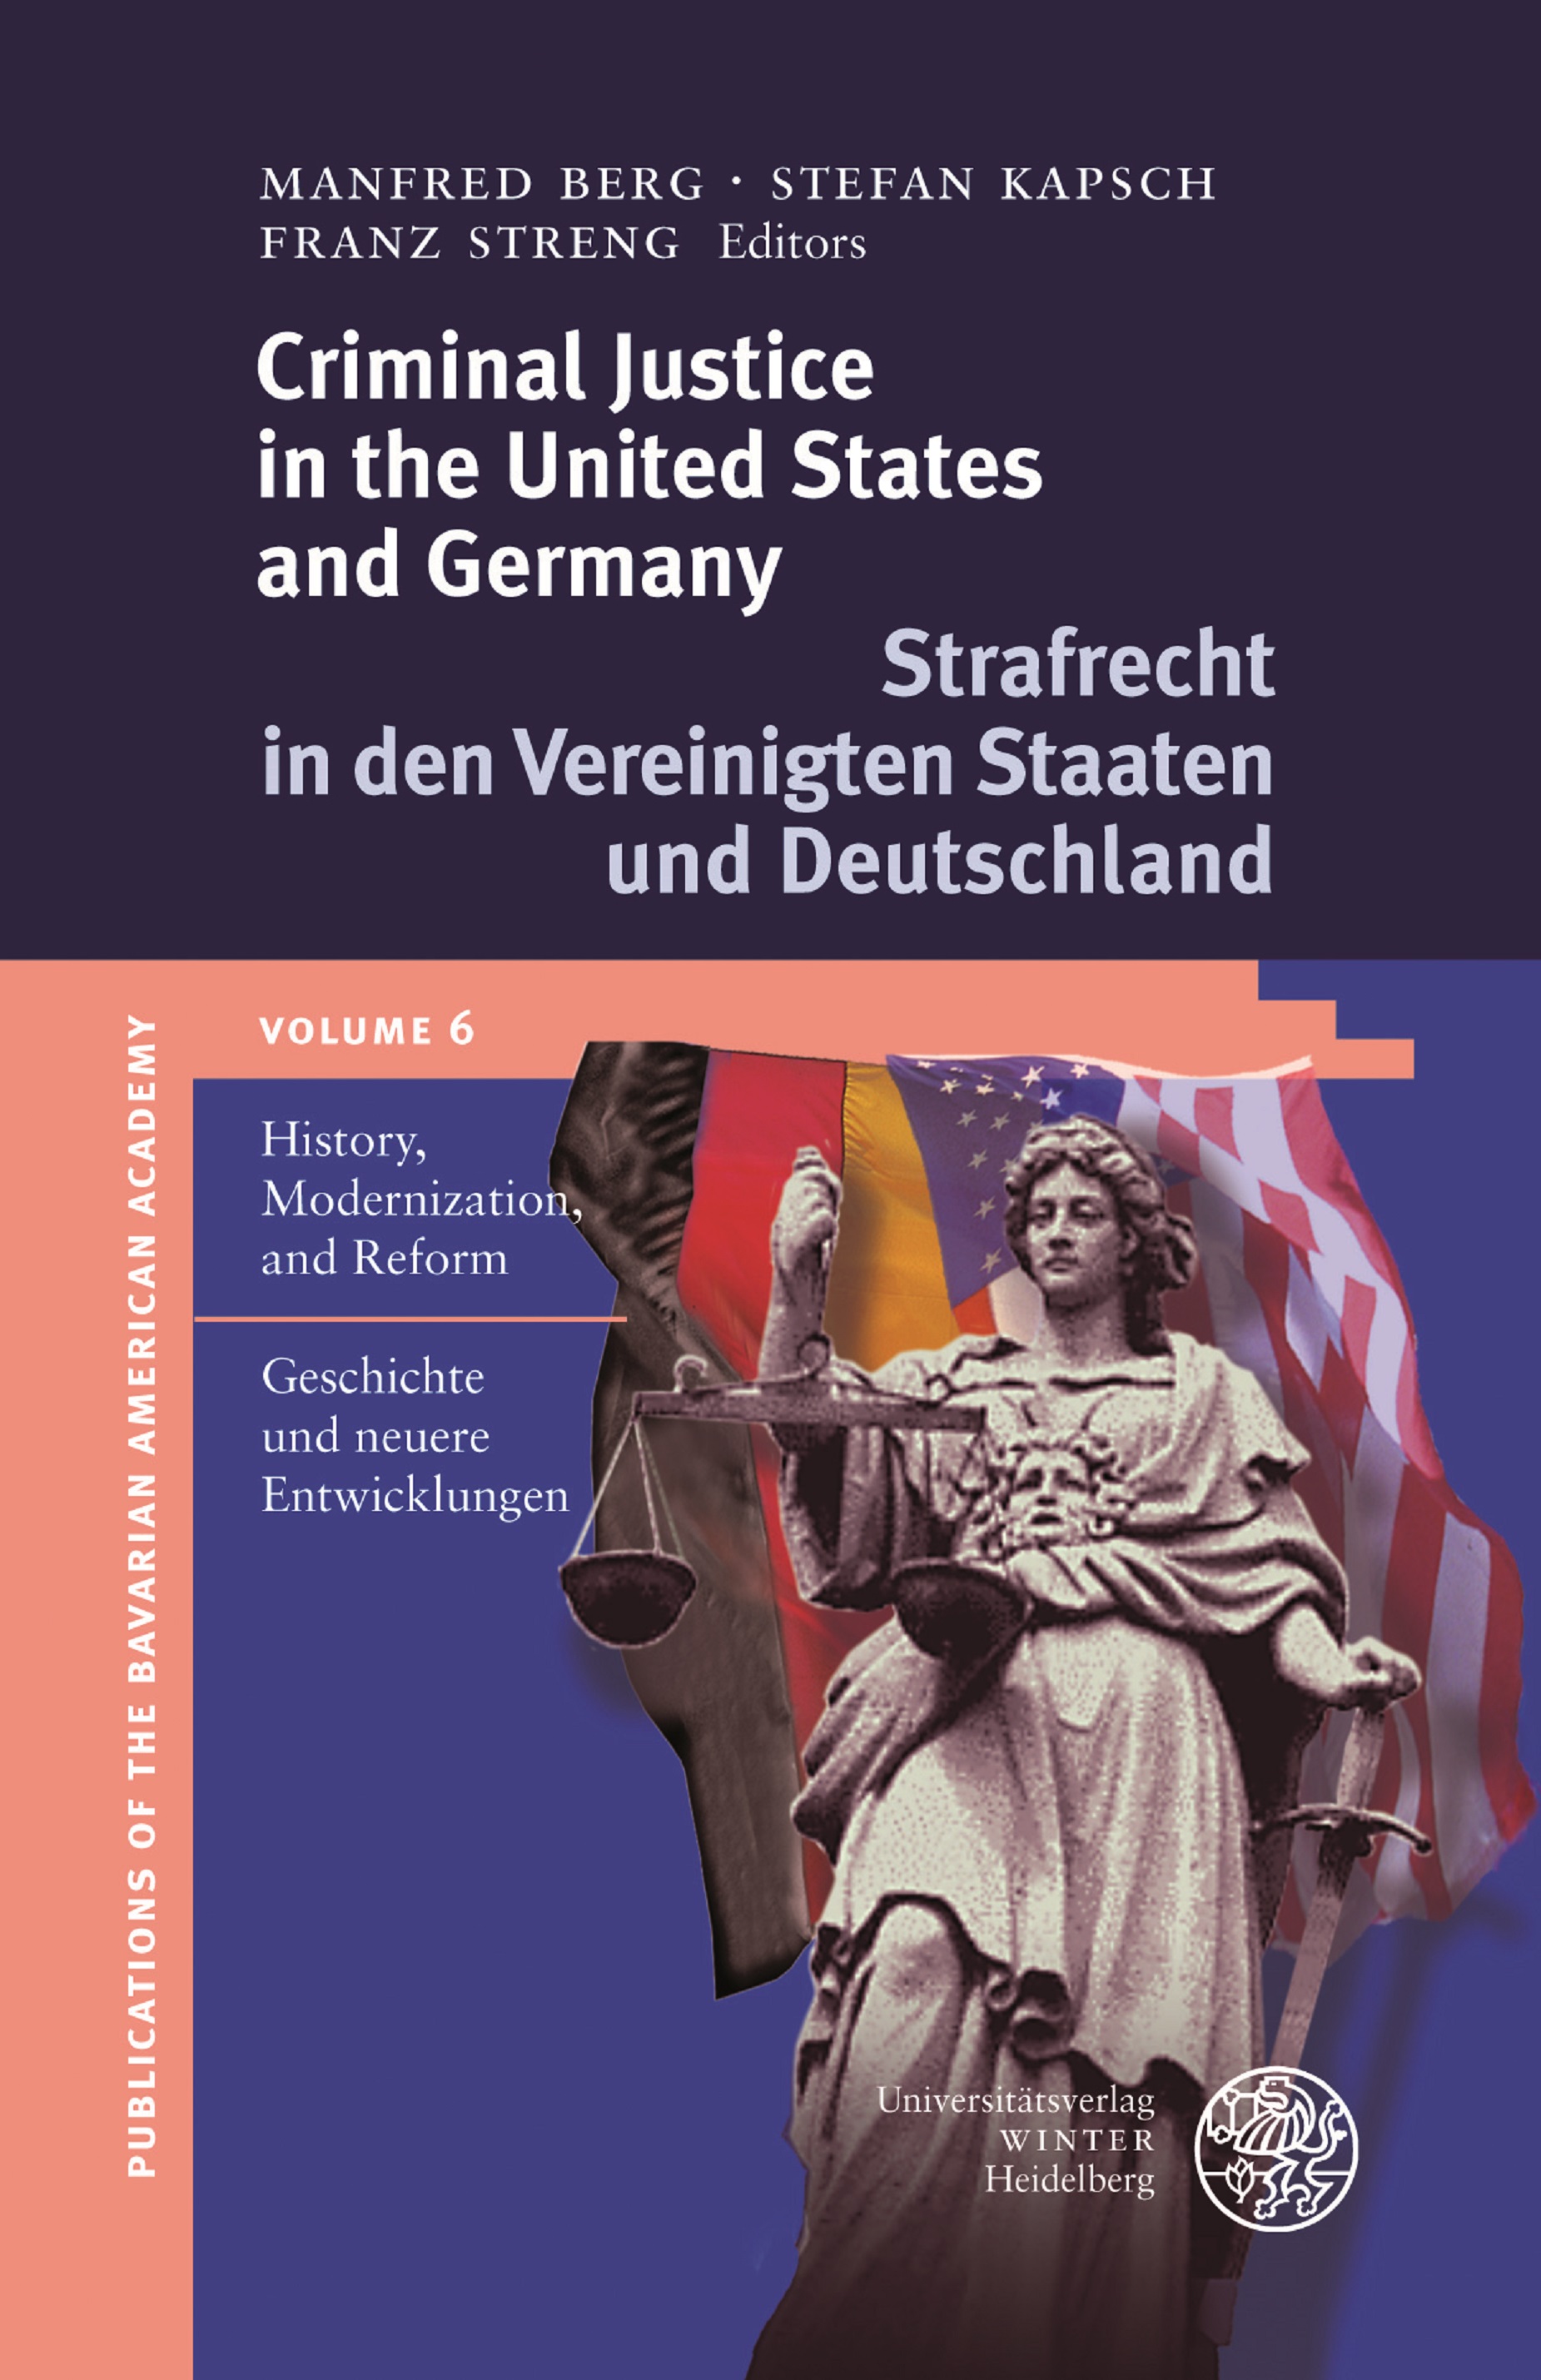 BAA-Publikation Vol. 6 Criminal Justice in the United States and Germany. Strafrecht in den Vereinigten Staaten und Deutschland